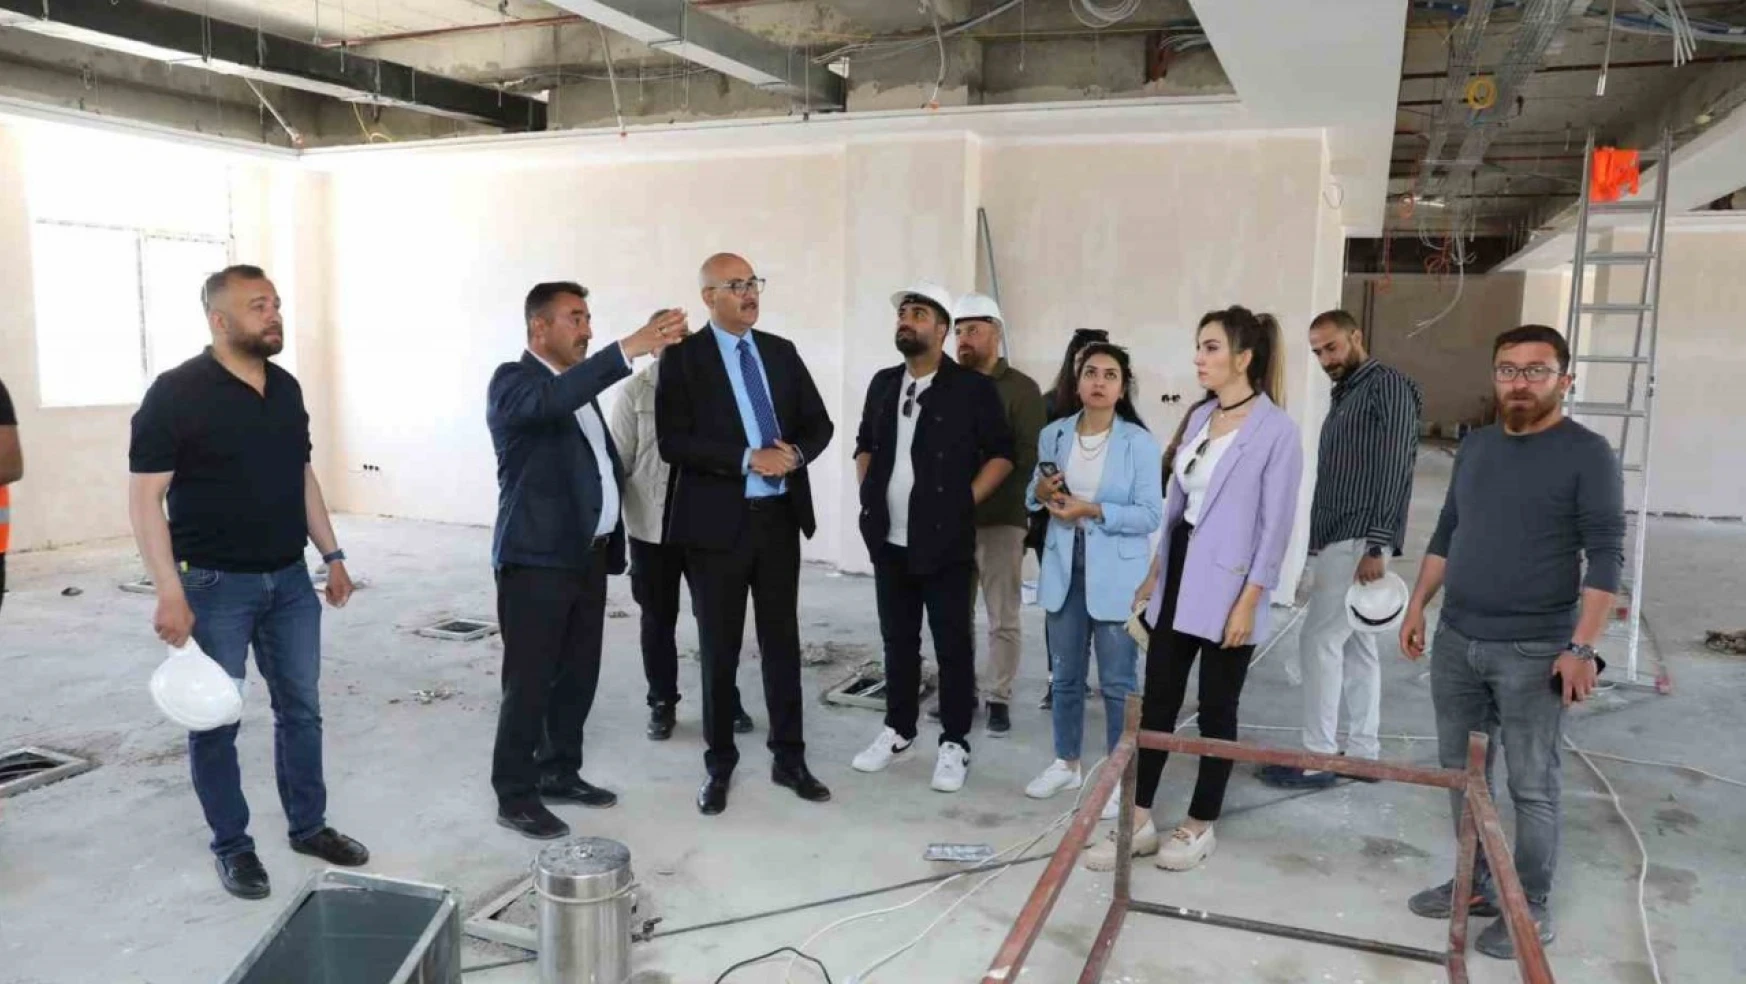 Belediye Başkan Vekili Aydın, halk kütüphanesi inşaatında incelemelerde bulundu